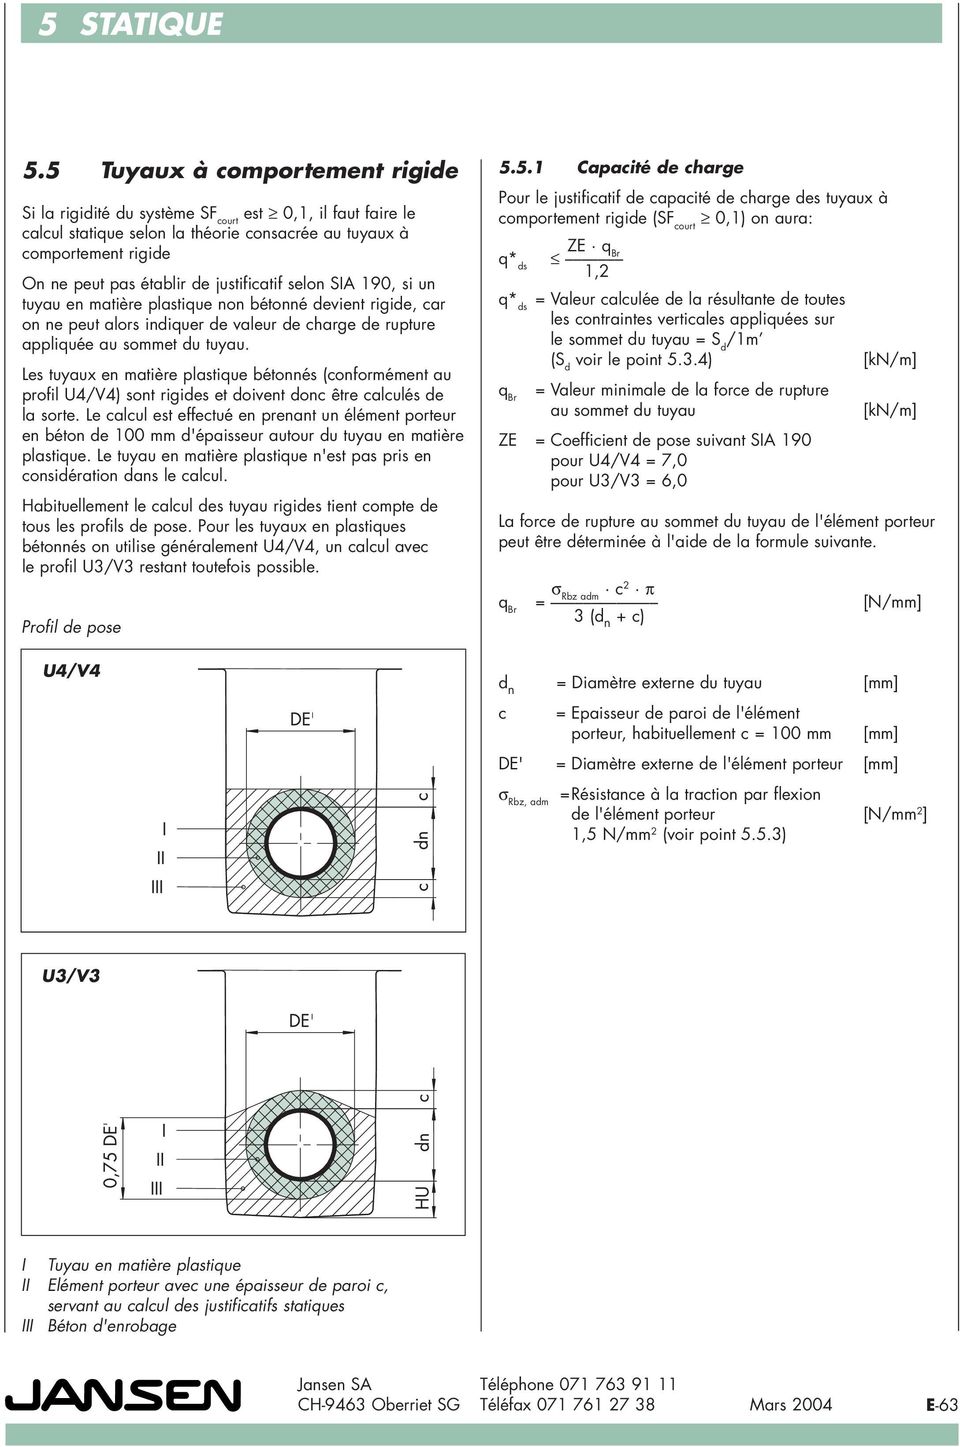 Les tuyaux en matière plastique bétonnés (conformément au profil U4/V4) sont rigides et doivent donc être calculés de la sorte.